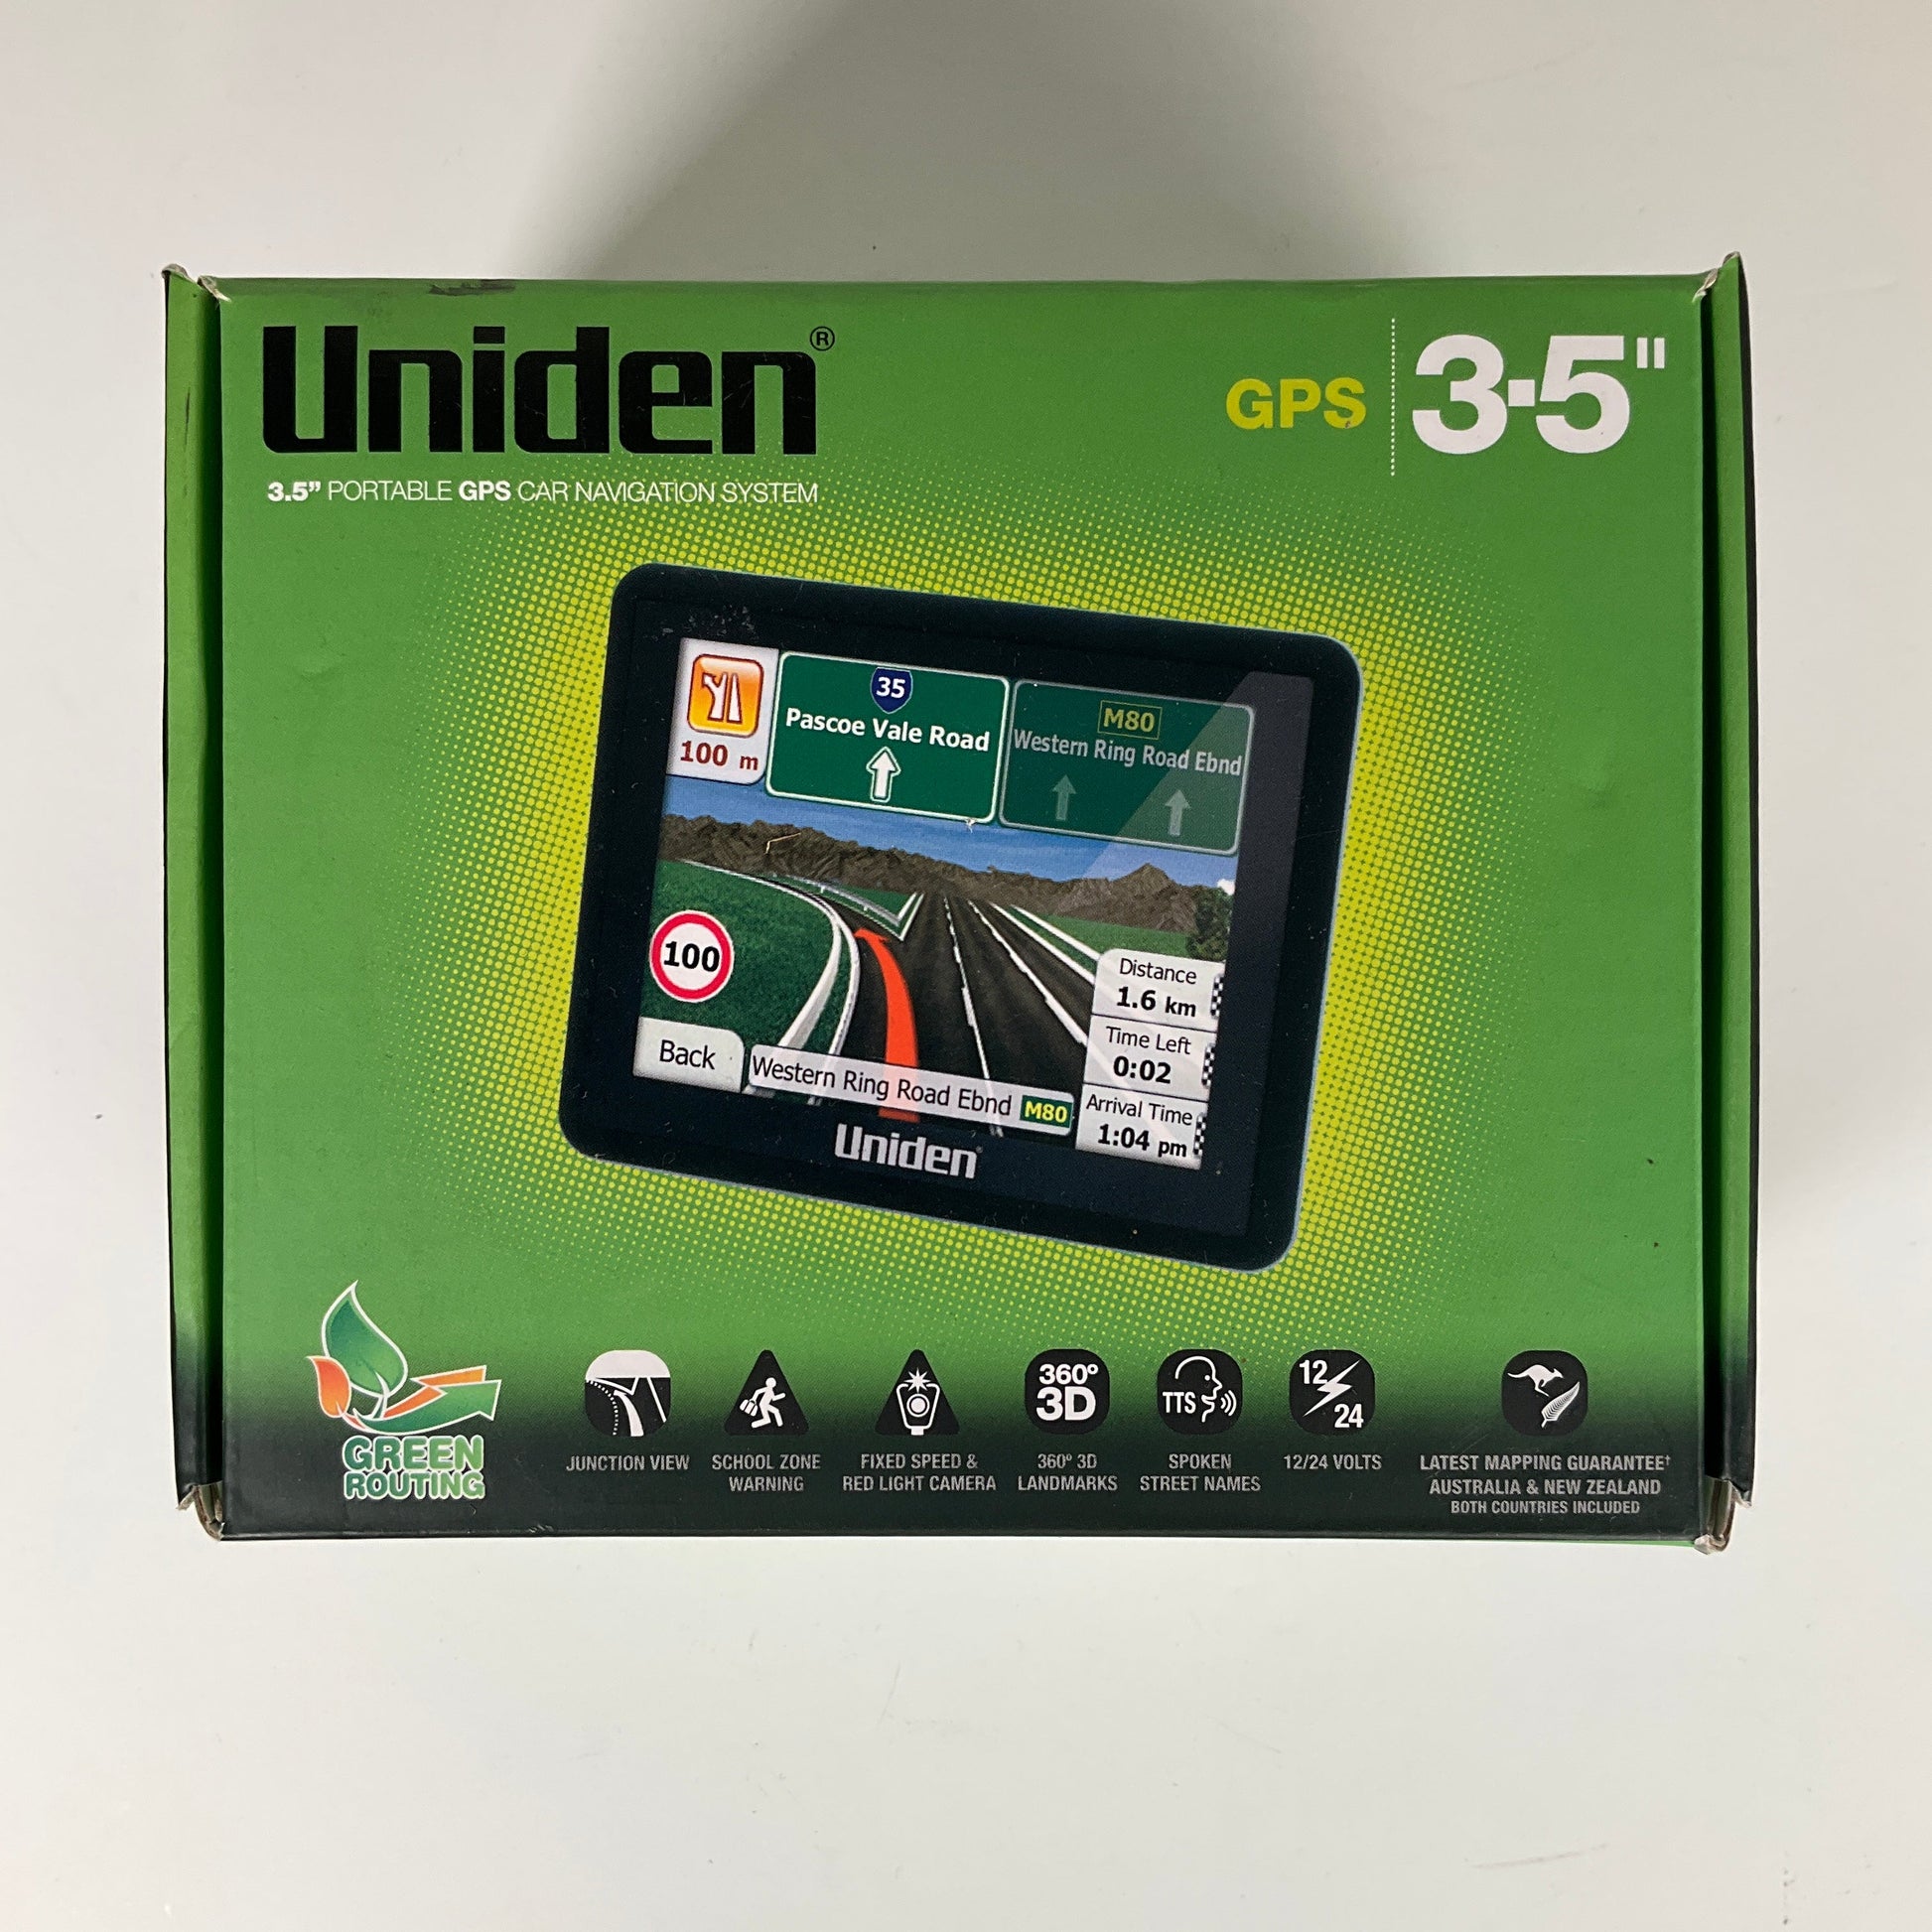 Uniden - Igo 35 Gps Navigation Systems